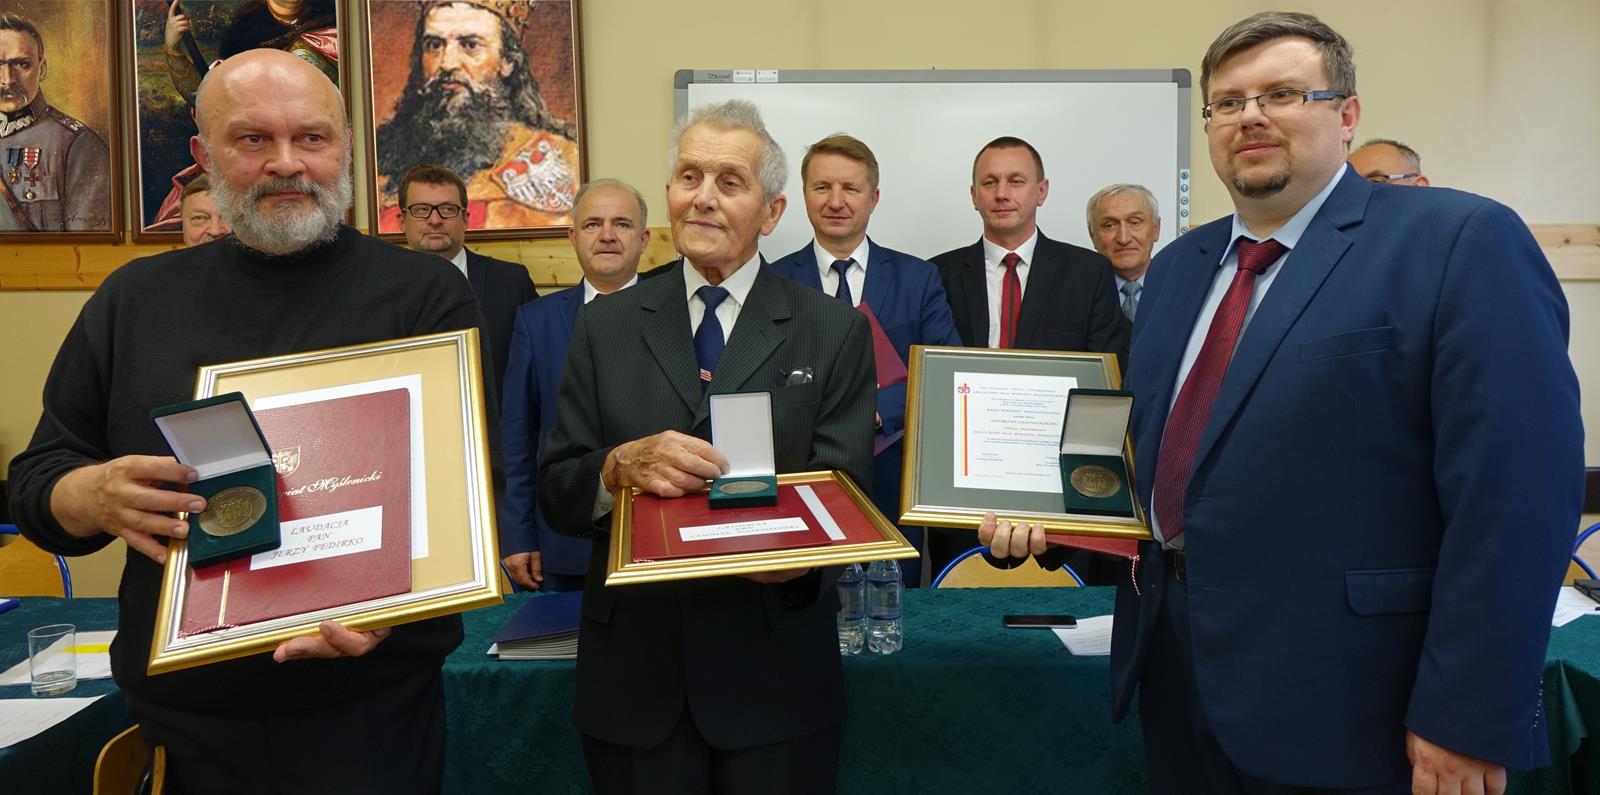 Na pierwszym planie - od lewej:  Jerzy Fedirko, Ludwik Dziewoński, Piotr Sadowski - wyróżnieni Tytułem Honorowym „Zasłużony dla Powiatu Myślenickiego"